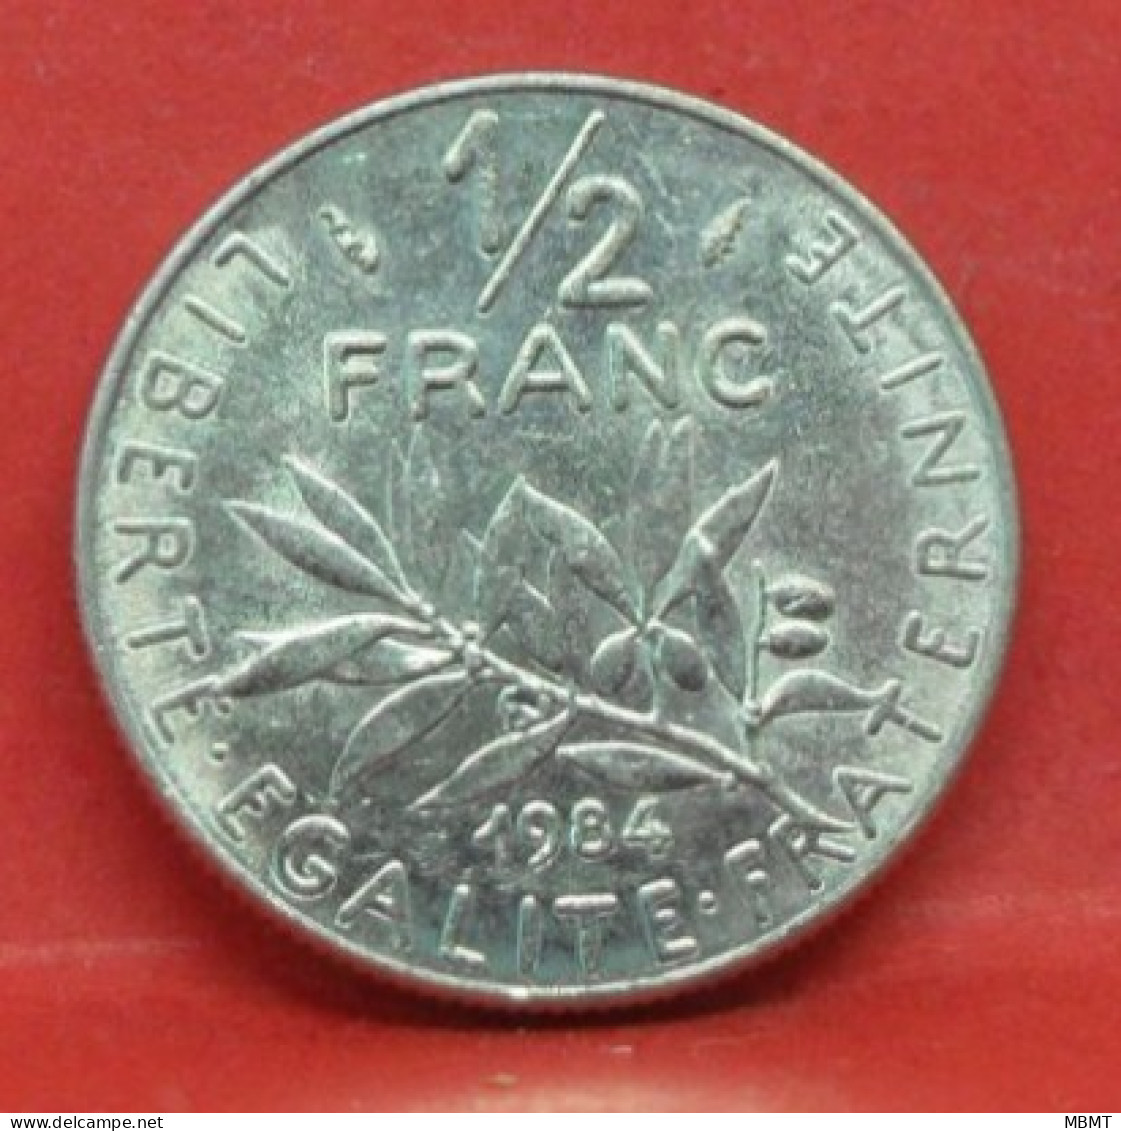 50 Centimes Semeuse 1984 - SPL - Pièce Monnaie France - Article N°1066 - 50 Centimes